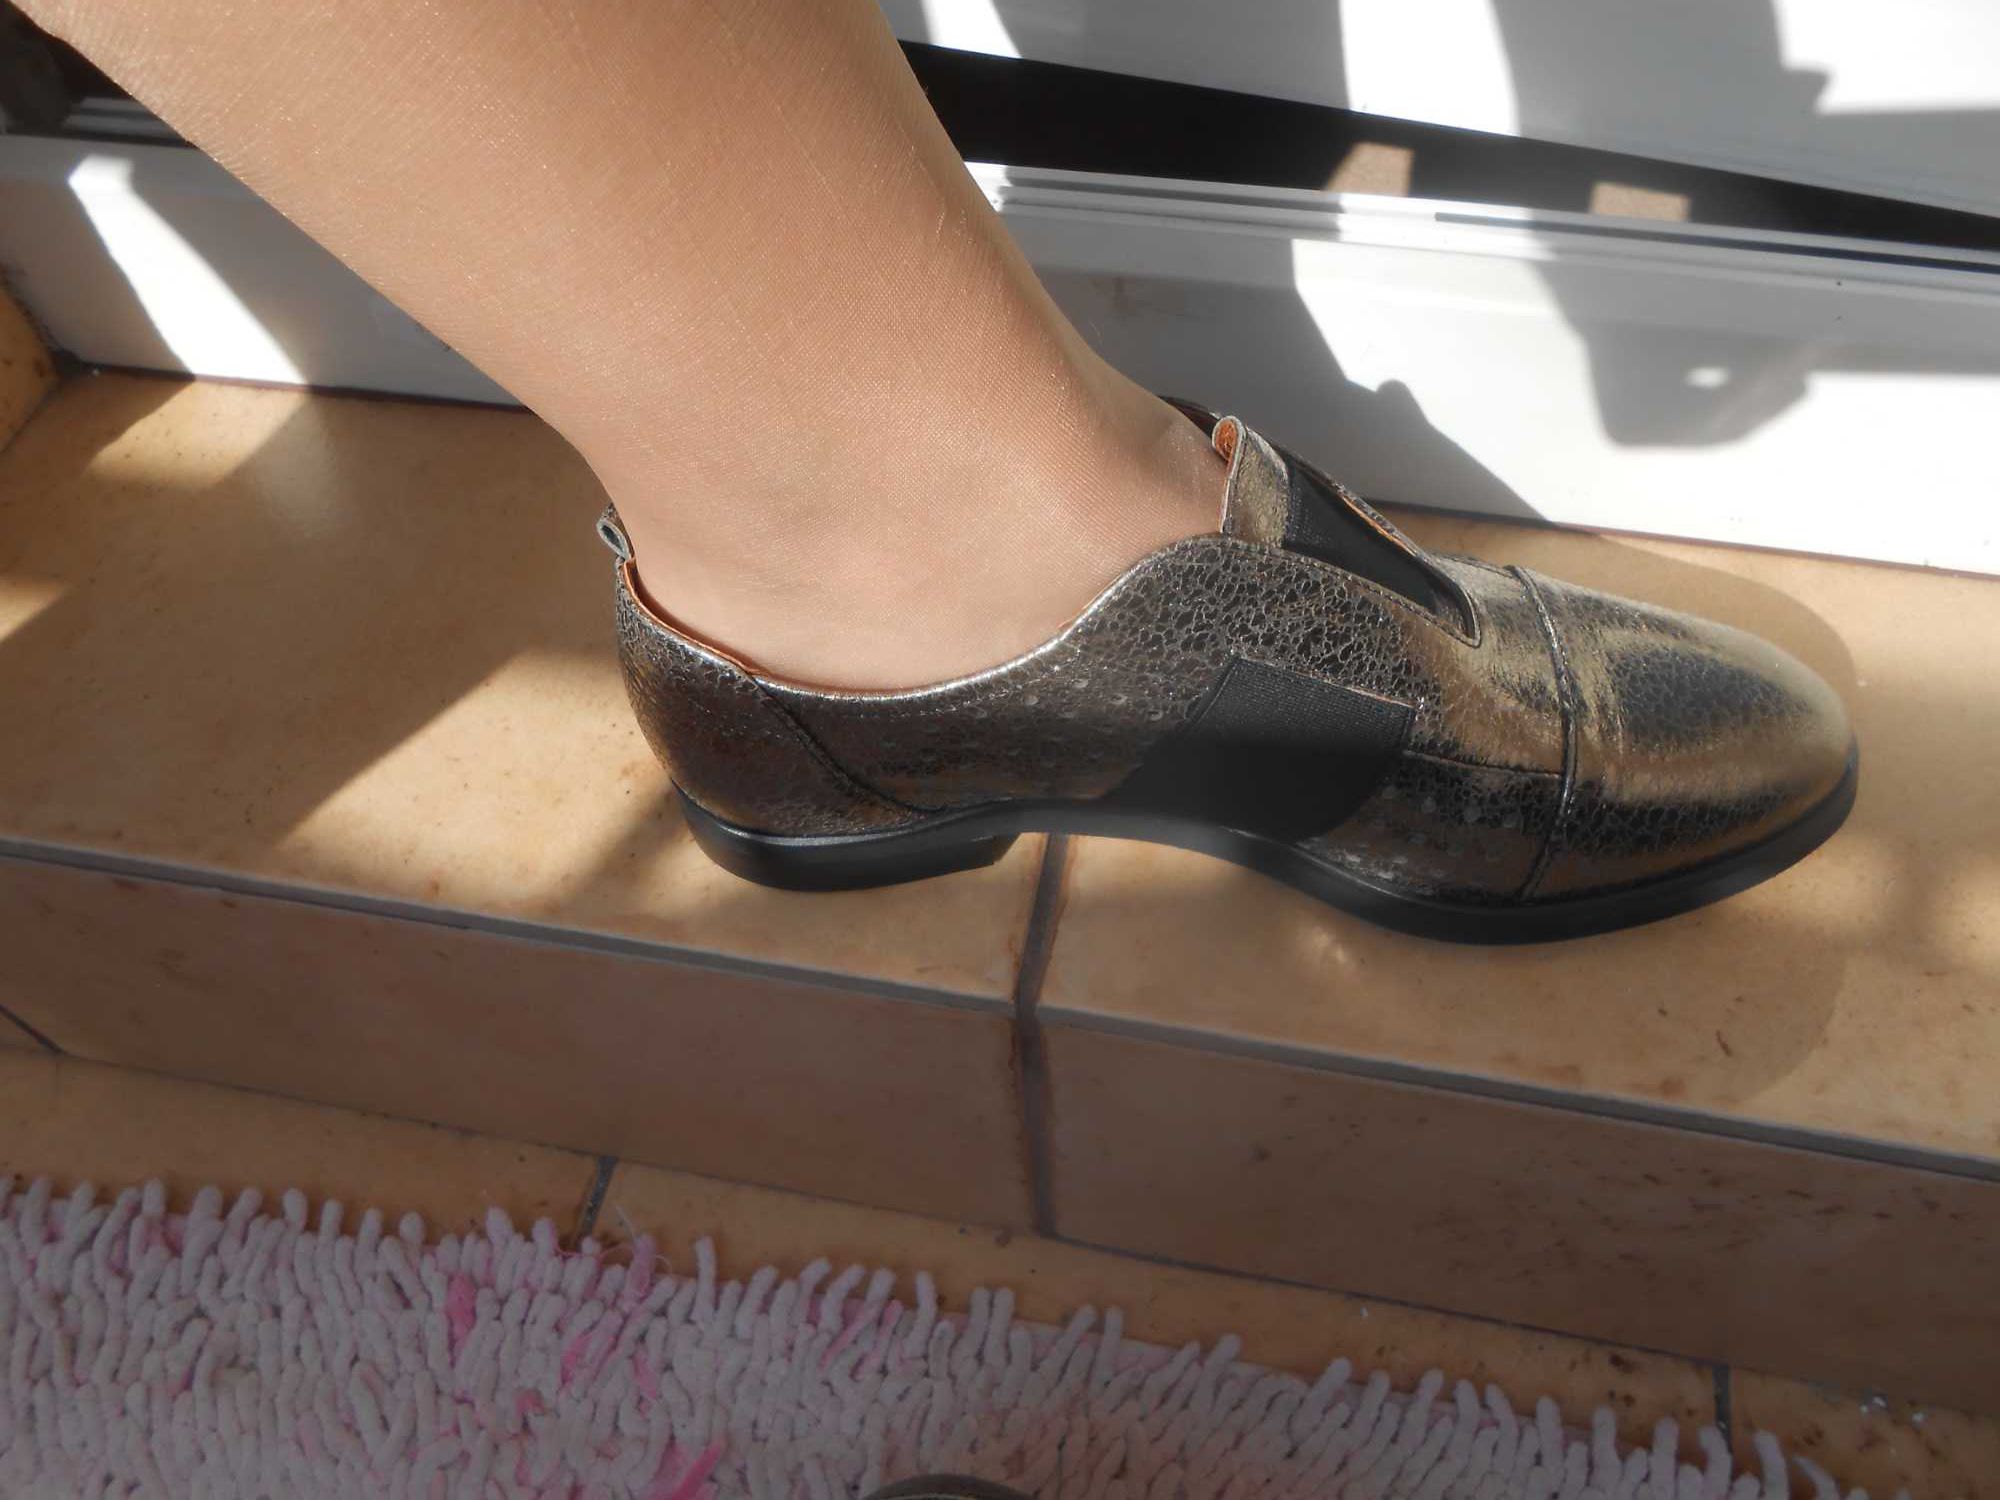 Buty skórzane damskie, wsuwane 37/ 23,5 cm